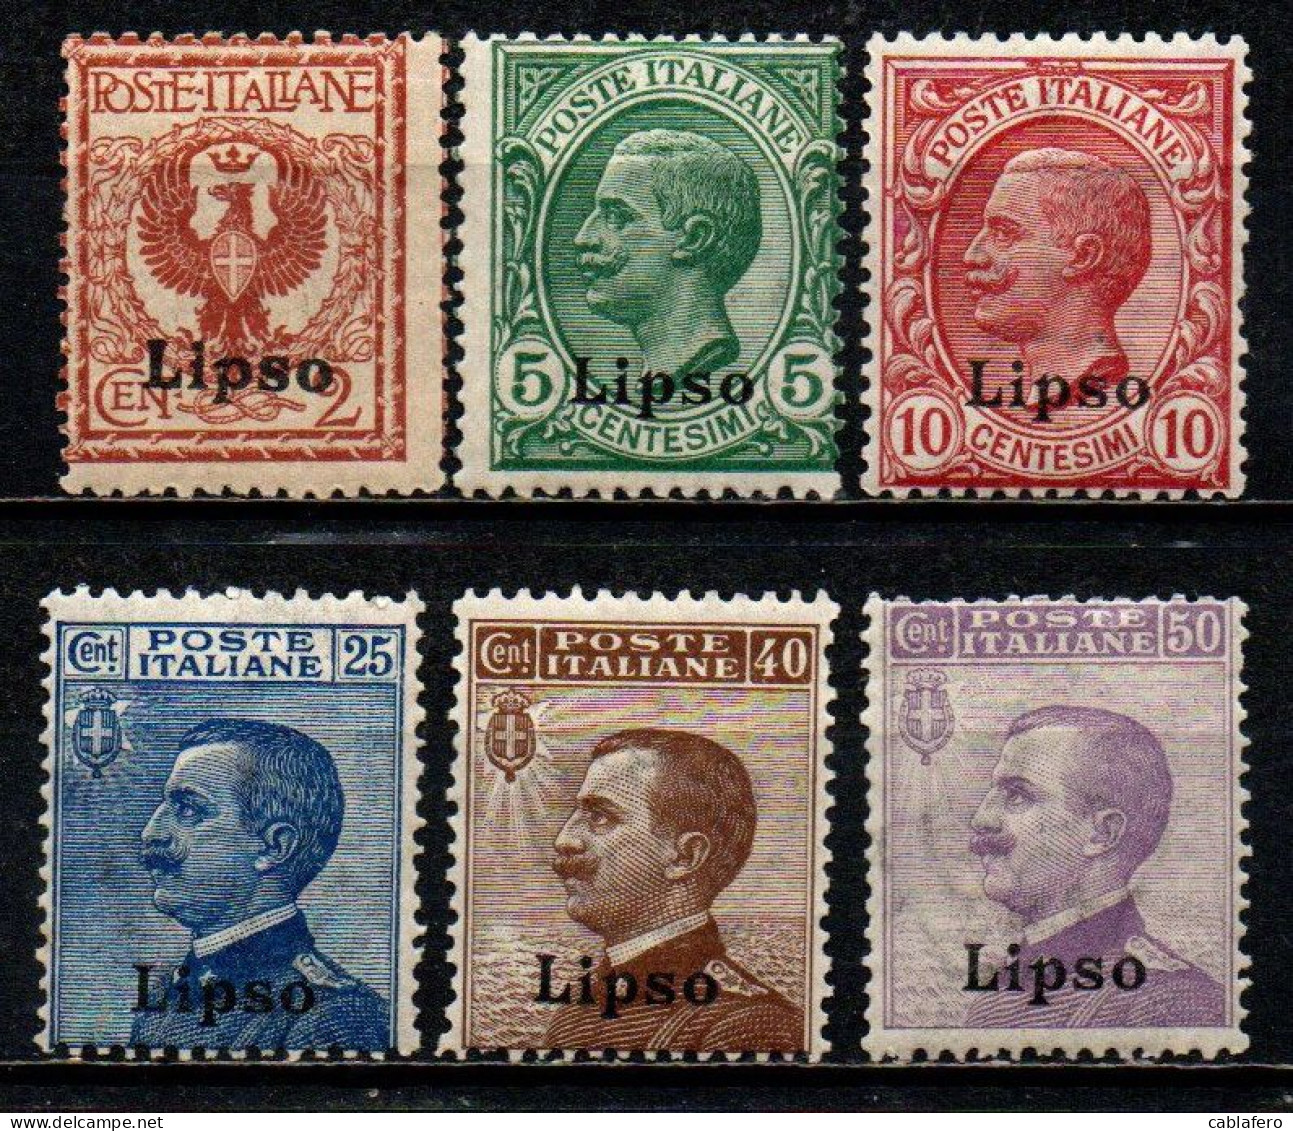 COLONIE ITALIANE - LIPSO - 1912 - EFFIGIE DEL RE VITTORIO EMANUELE III - MNH - Ägäis (Lipso)